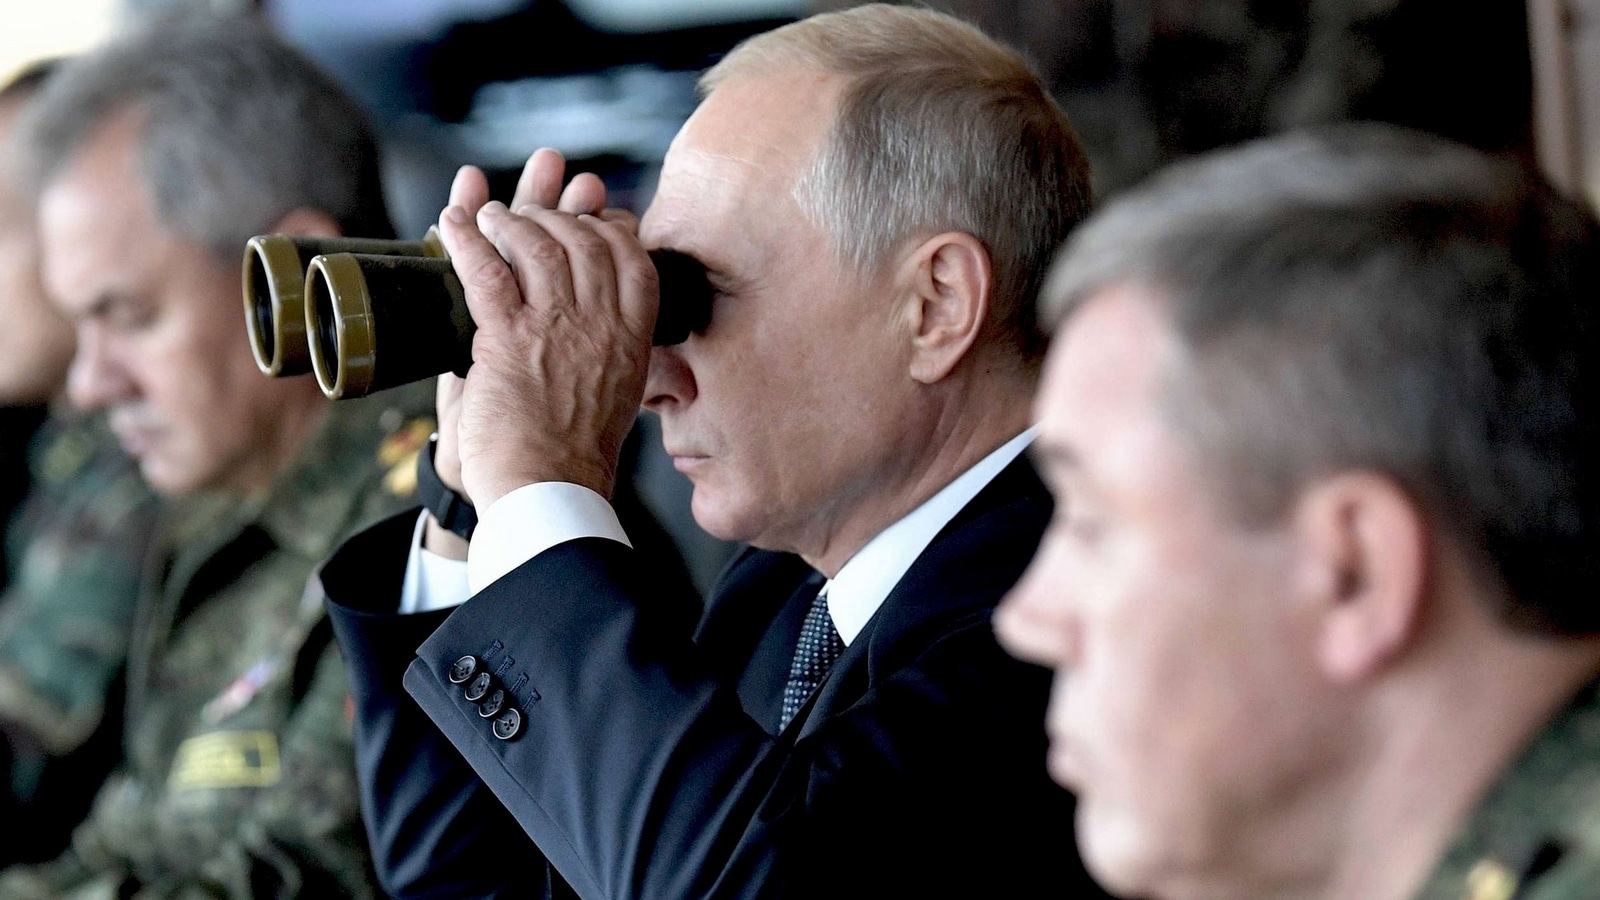 Vladimir Poutine visitant le terrain d'entraînement de Telemba, le 13 septembre 2018.

Numéro de reportage  : AP22247033_000010 
Auteurs  : Alexei Nikolsky/AP/SIPA